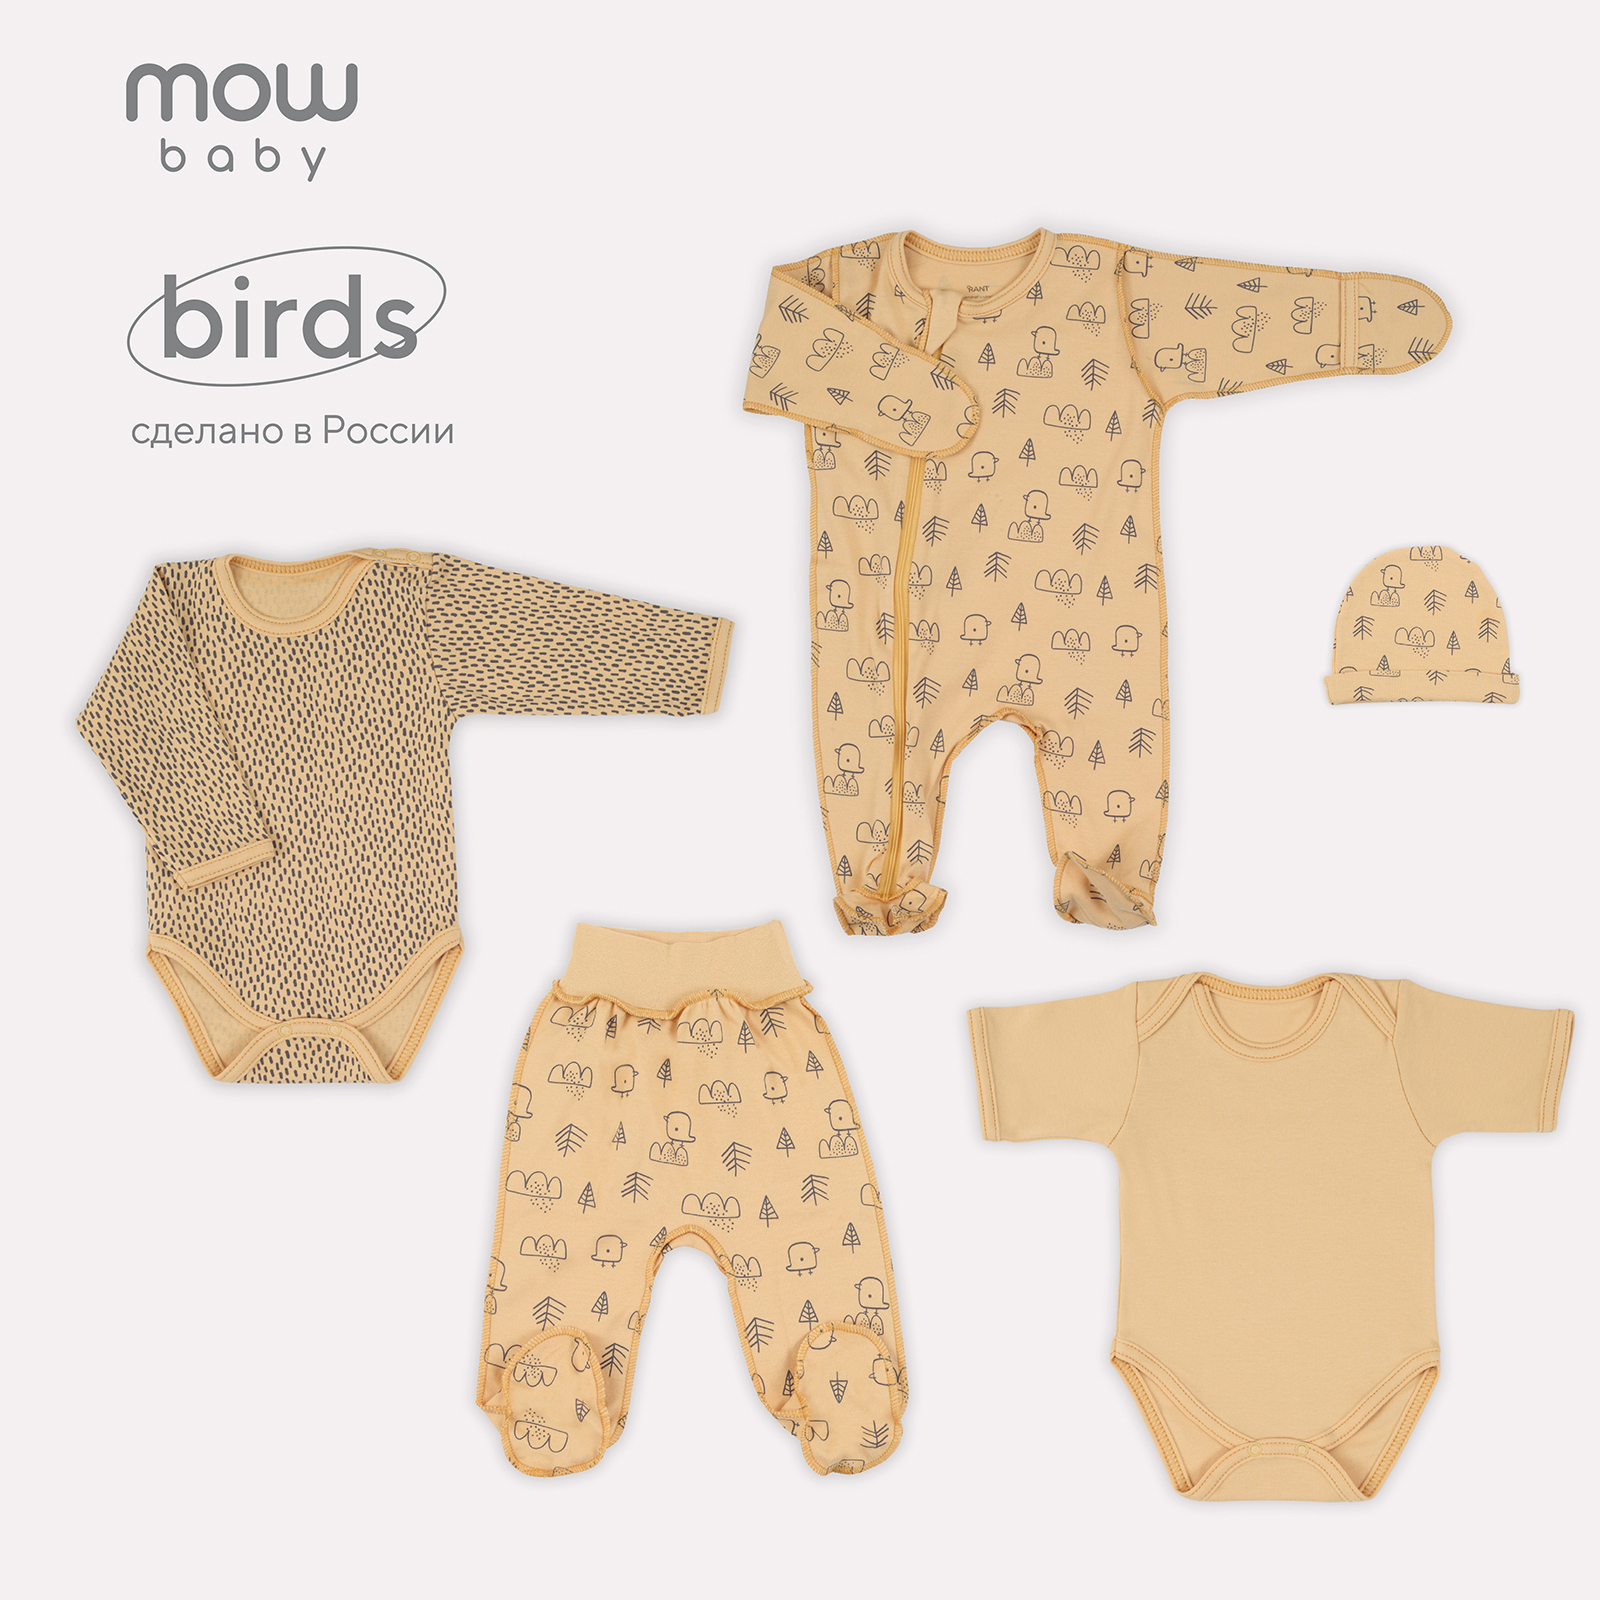 Комплект одежды для новорожденного MowBaby Birds Yellow 5-82 р.56 (5 предметов) olant baby набор для новорожденного horizon shine 5 предметов